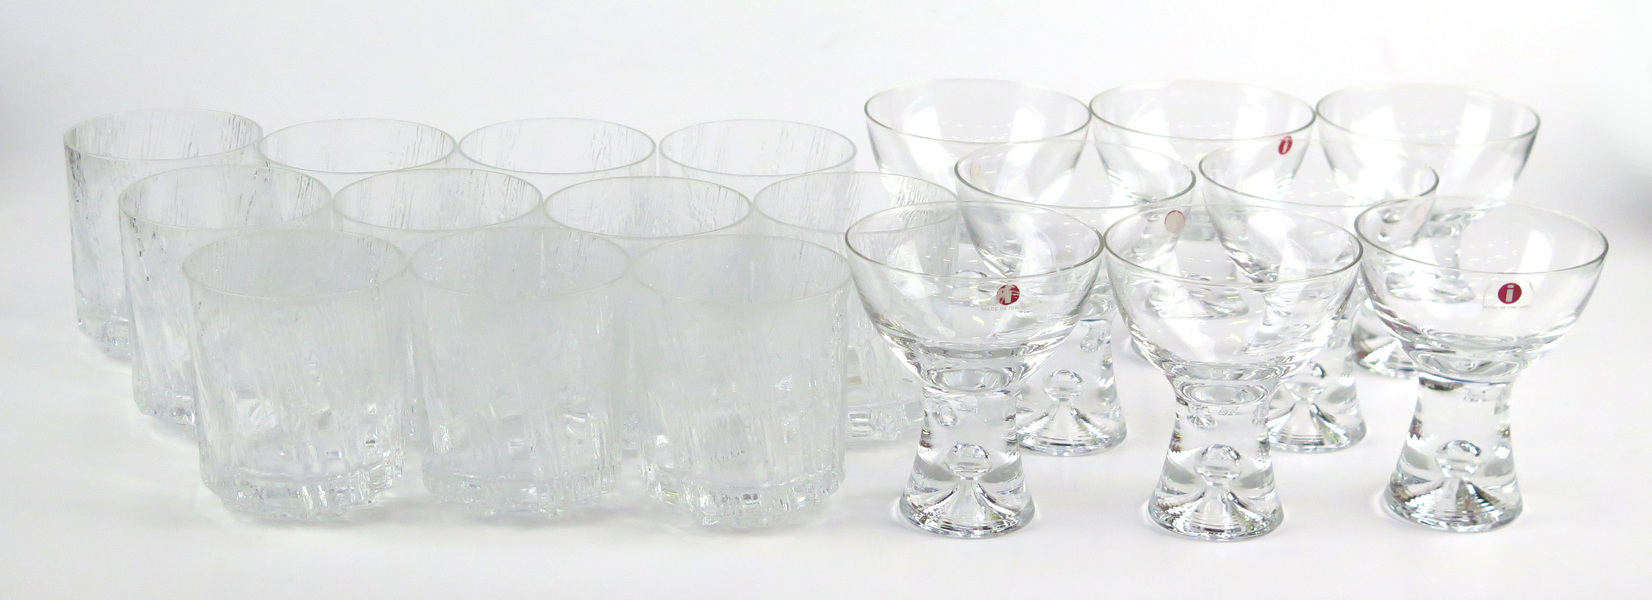 Wirkkala, Tapio för Iittala, sherryglas, 8 st, "Tapio", dekor av luftbubbla, medföljer 10 seltersglas, _16095a_8d9dfefa6326fb9_lg.jpeg